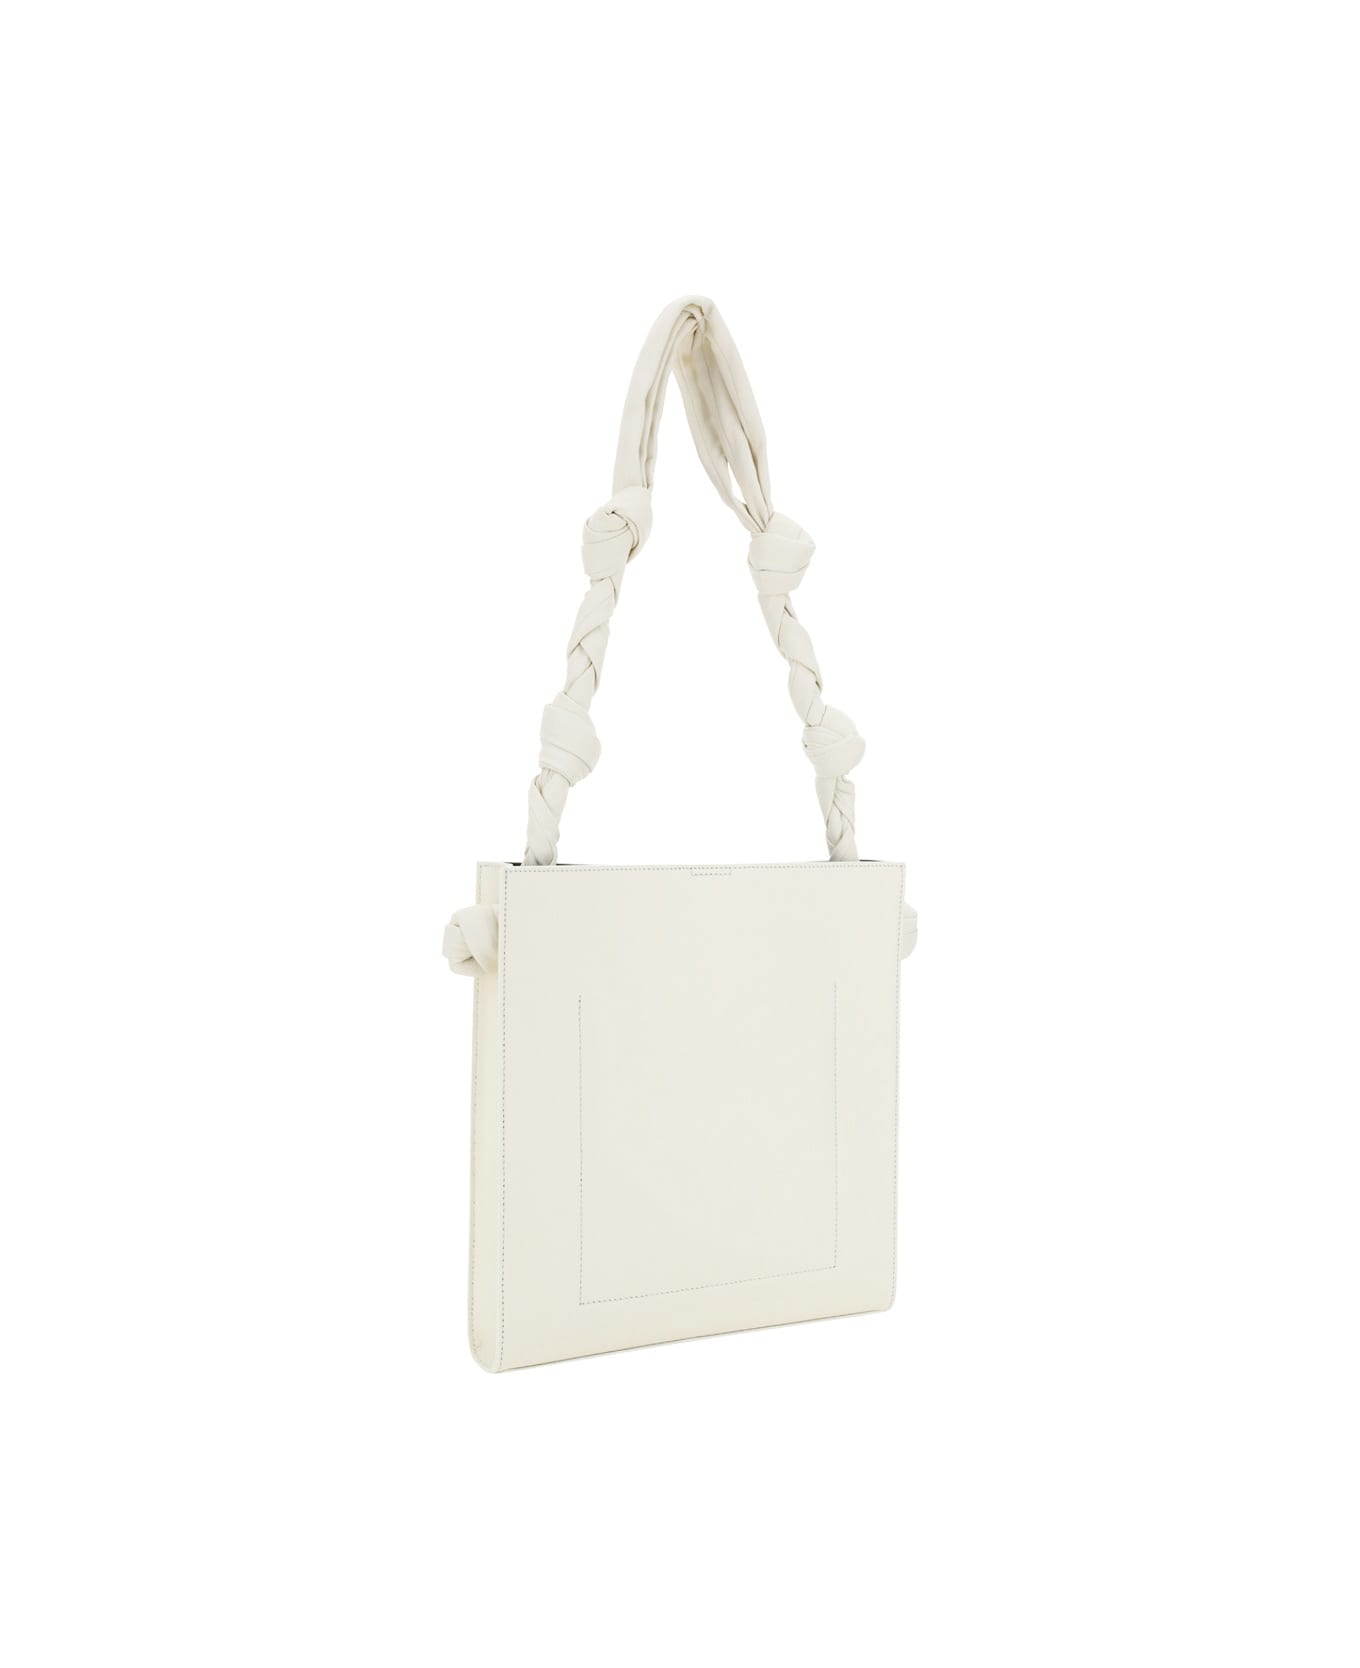 Jil Sander Natural Medium Tangle Shoulder Bag - Bianco トートバッグ